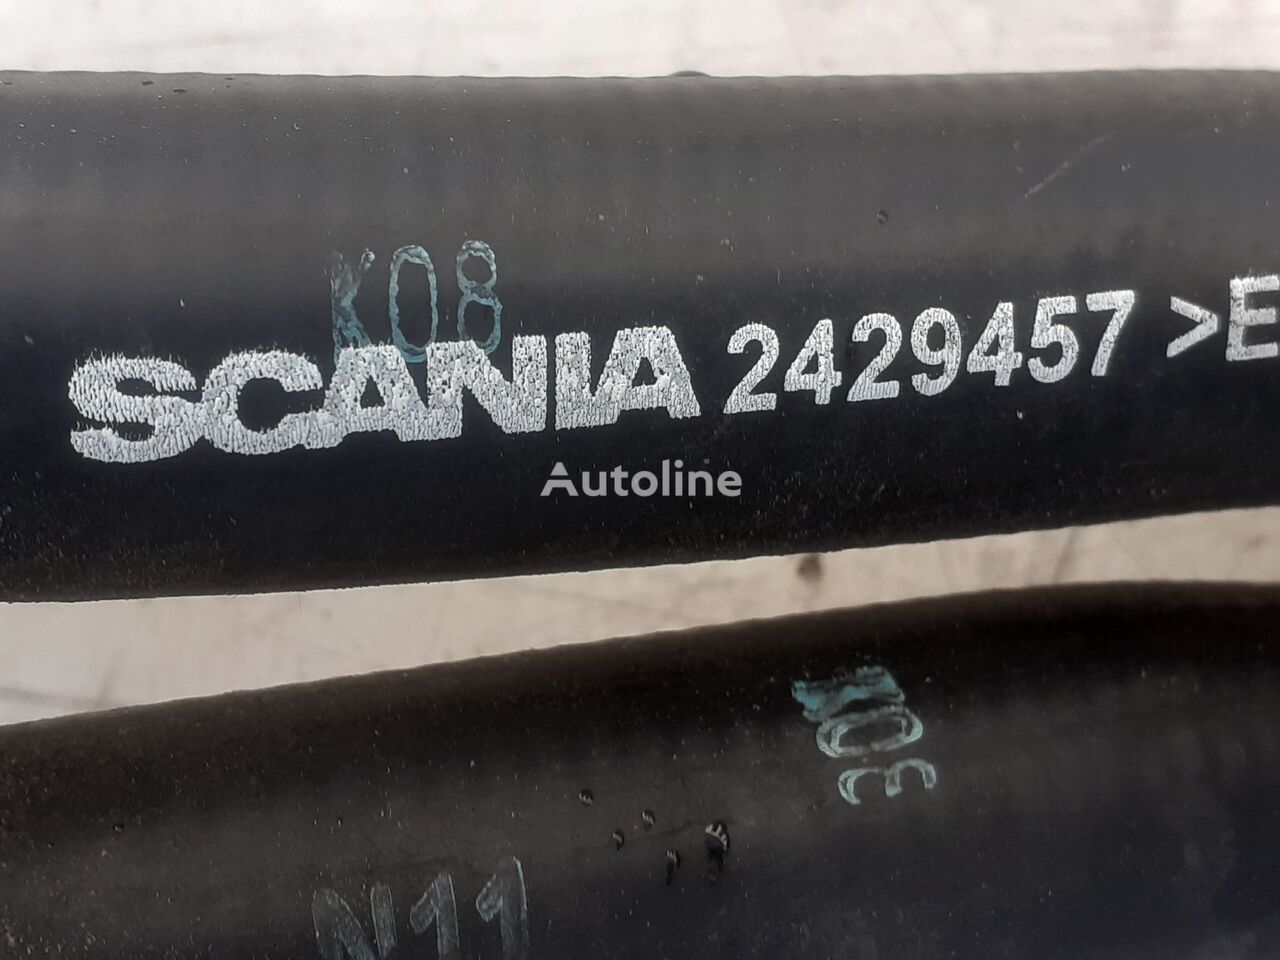 P450 2429457 tubo de refrigeración para Scania L,P,G,R,S series camión